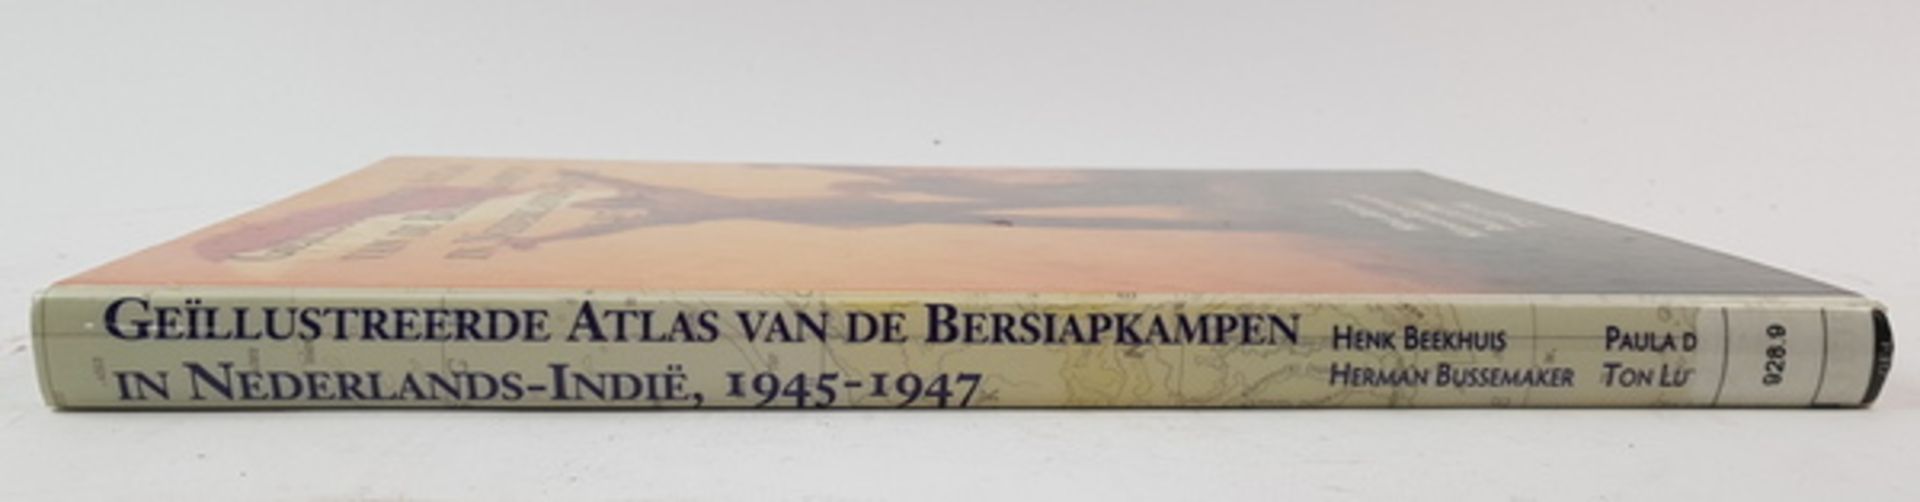 (Boeken) (Geschiedenis) Geillustreerde Atlas van de Bersiapkampen in Nederlands-Indie 1945- - Bild 3 aus 9